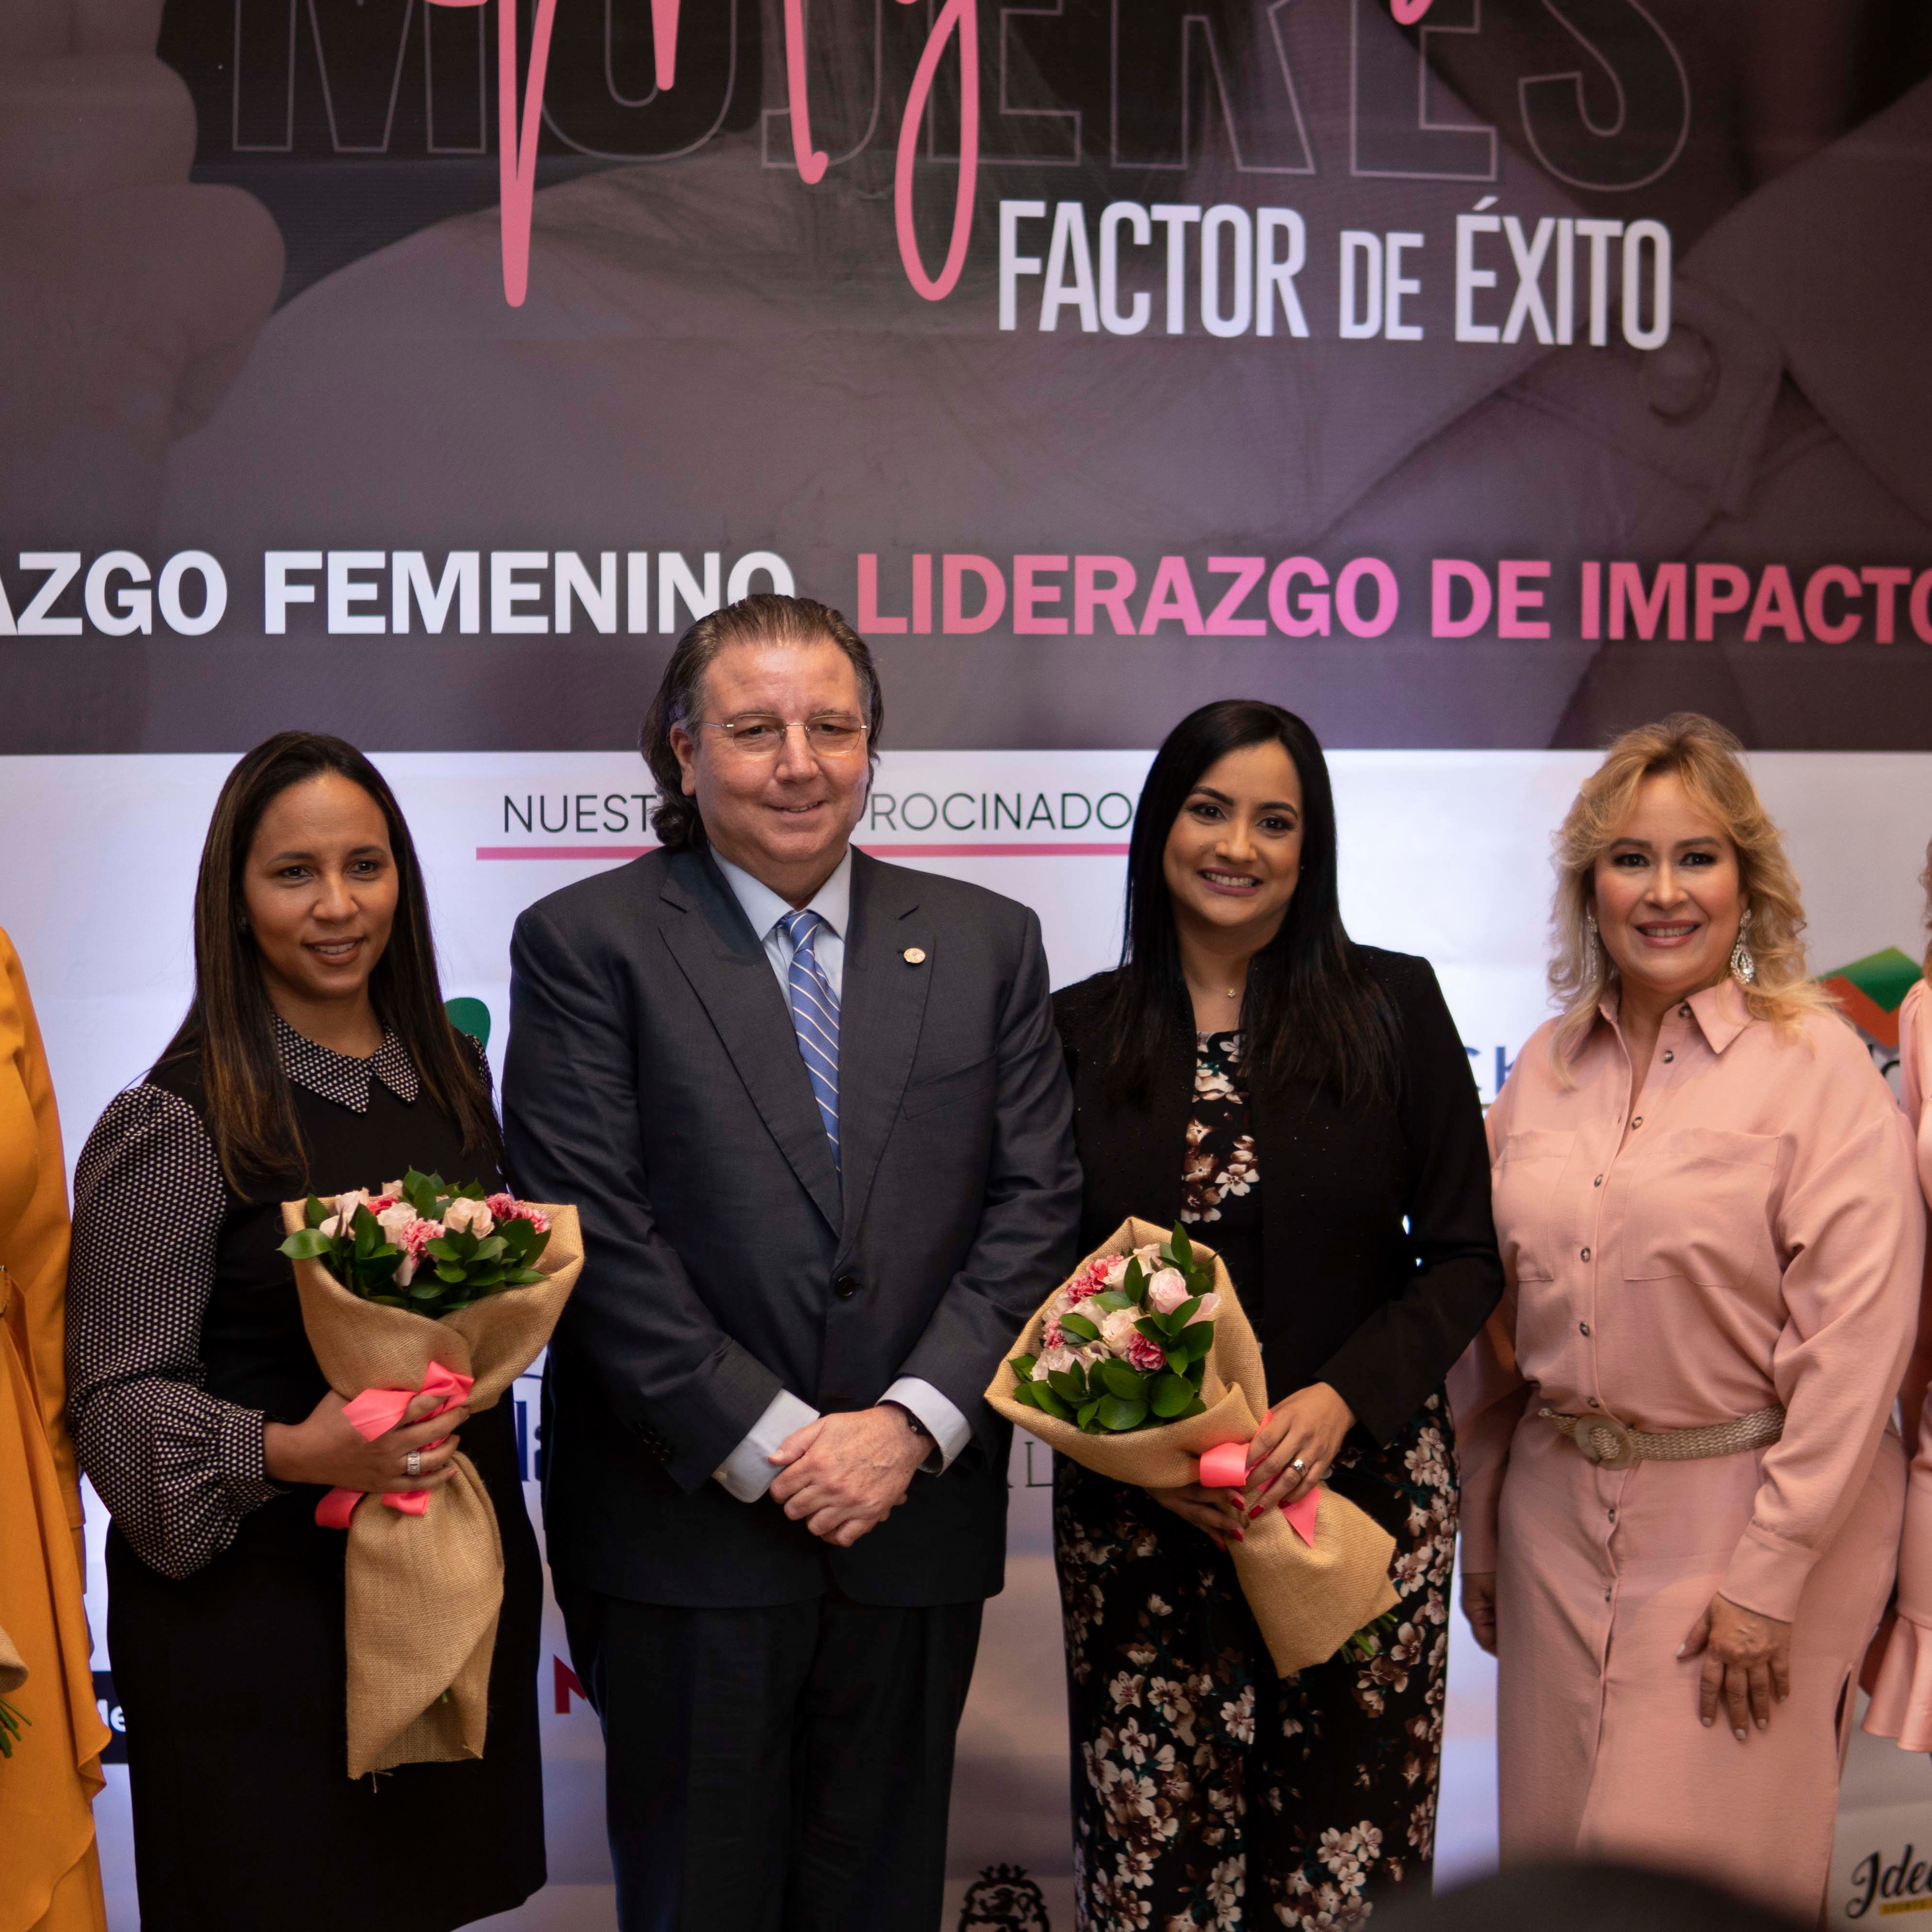 Mujeres Factor de Éxito: Liderazgo femenino, liderazgo de impacto